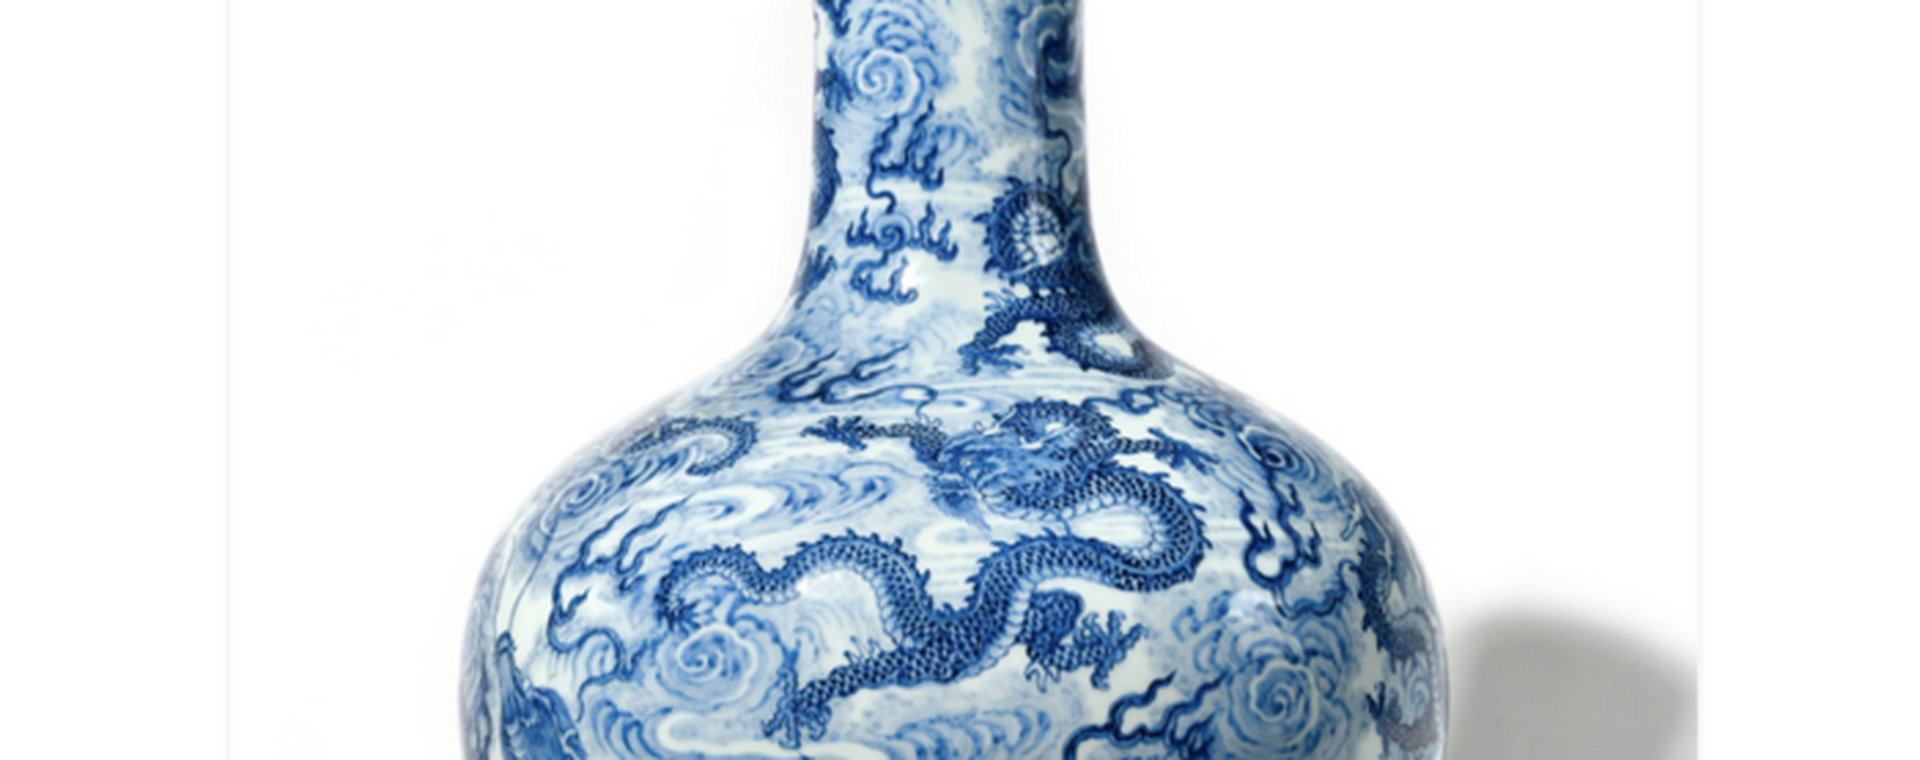 Chińska waza sprzedana na aukcji we Francji za 7,8 mln dol.